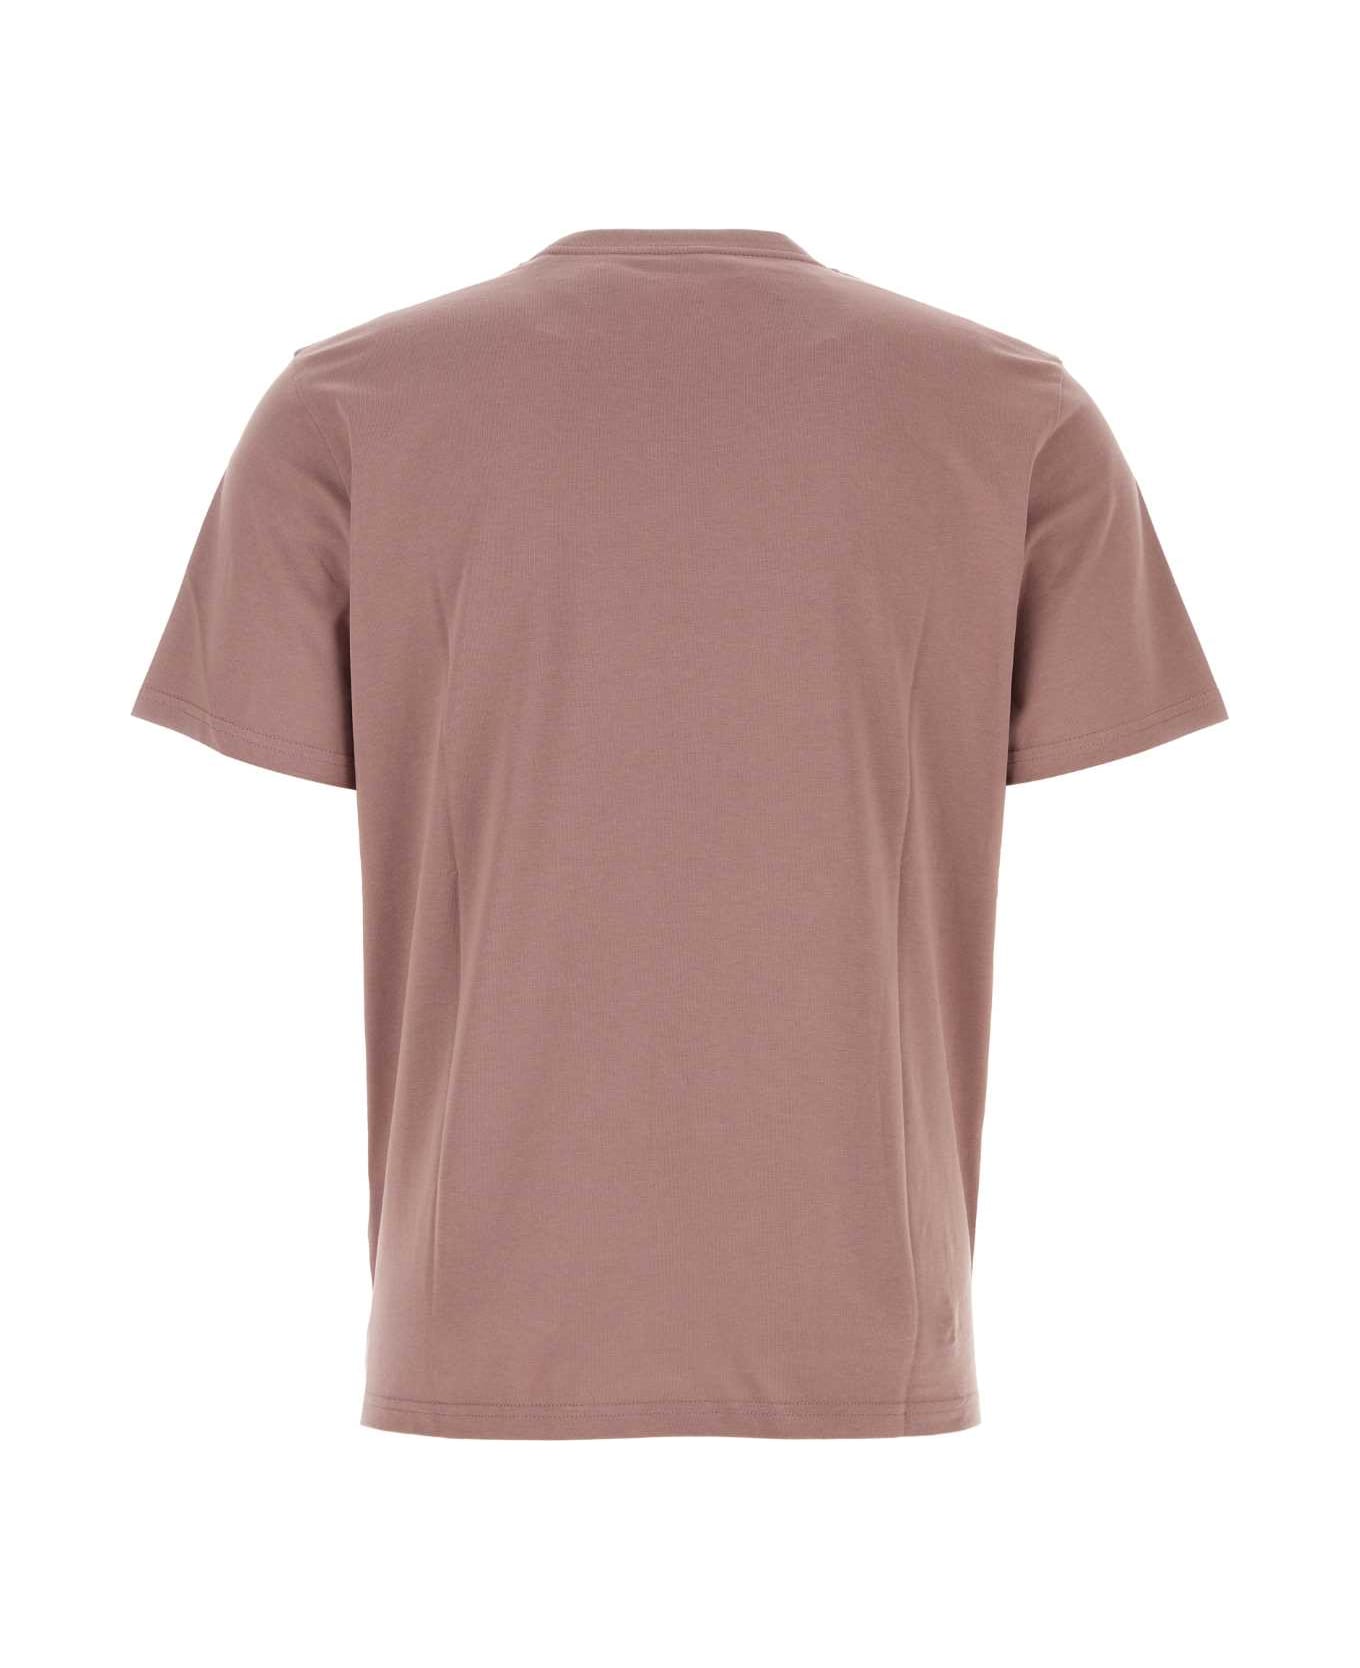 Carhartt Antiqued Pink Cotton S/s Pocket T-shirt - SABLEBLK